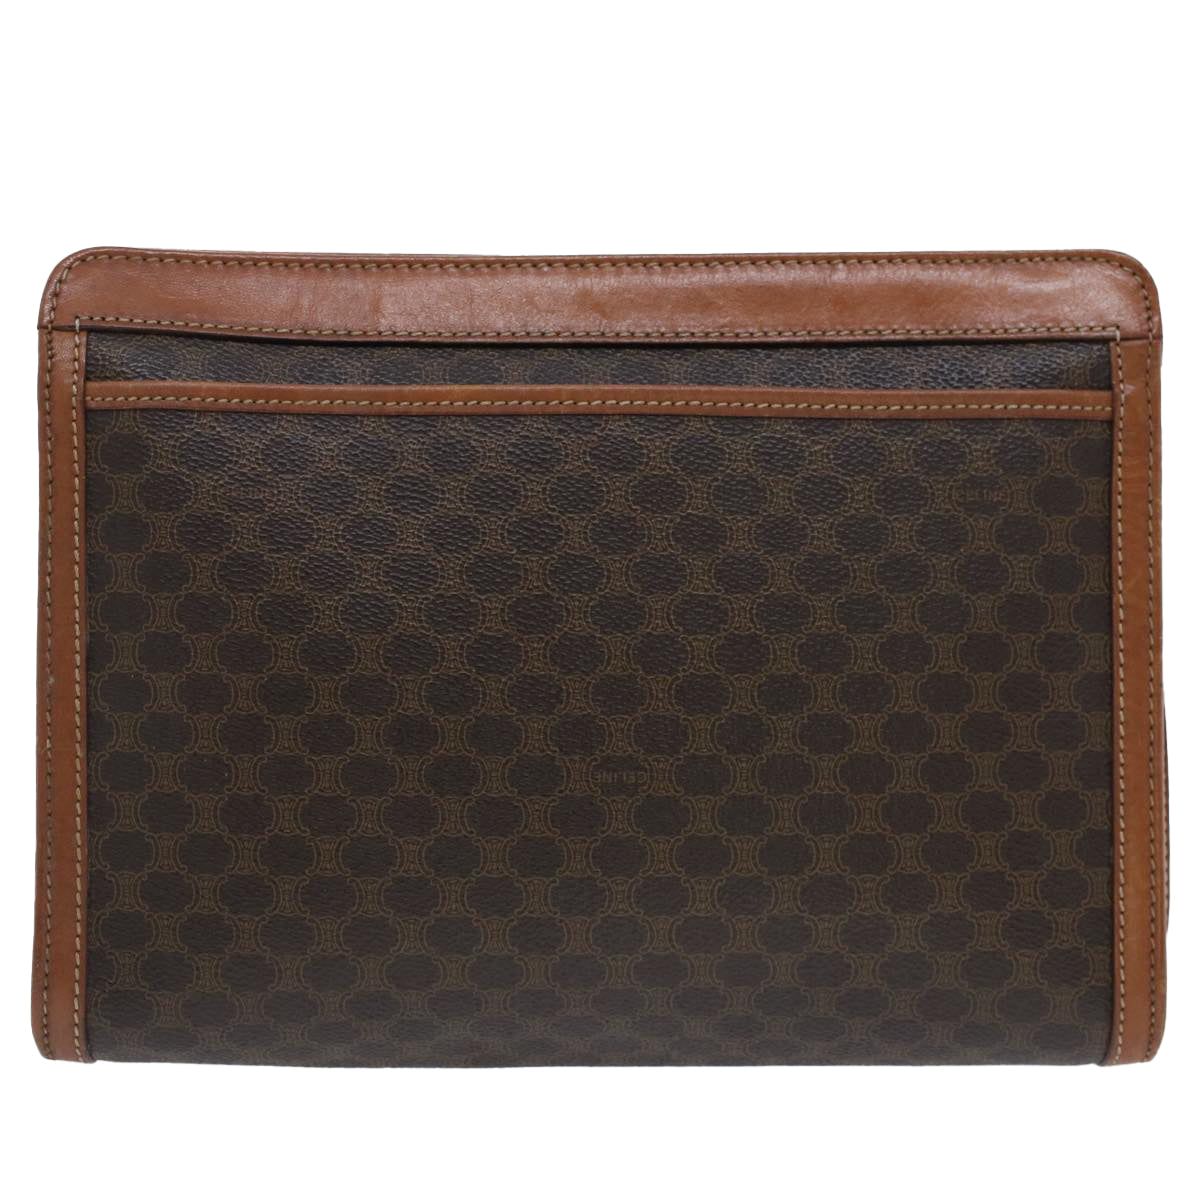 CELINE Macadam Canvas Clutch Bag PVC Leather Brown Auth fm2642 - 0